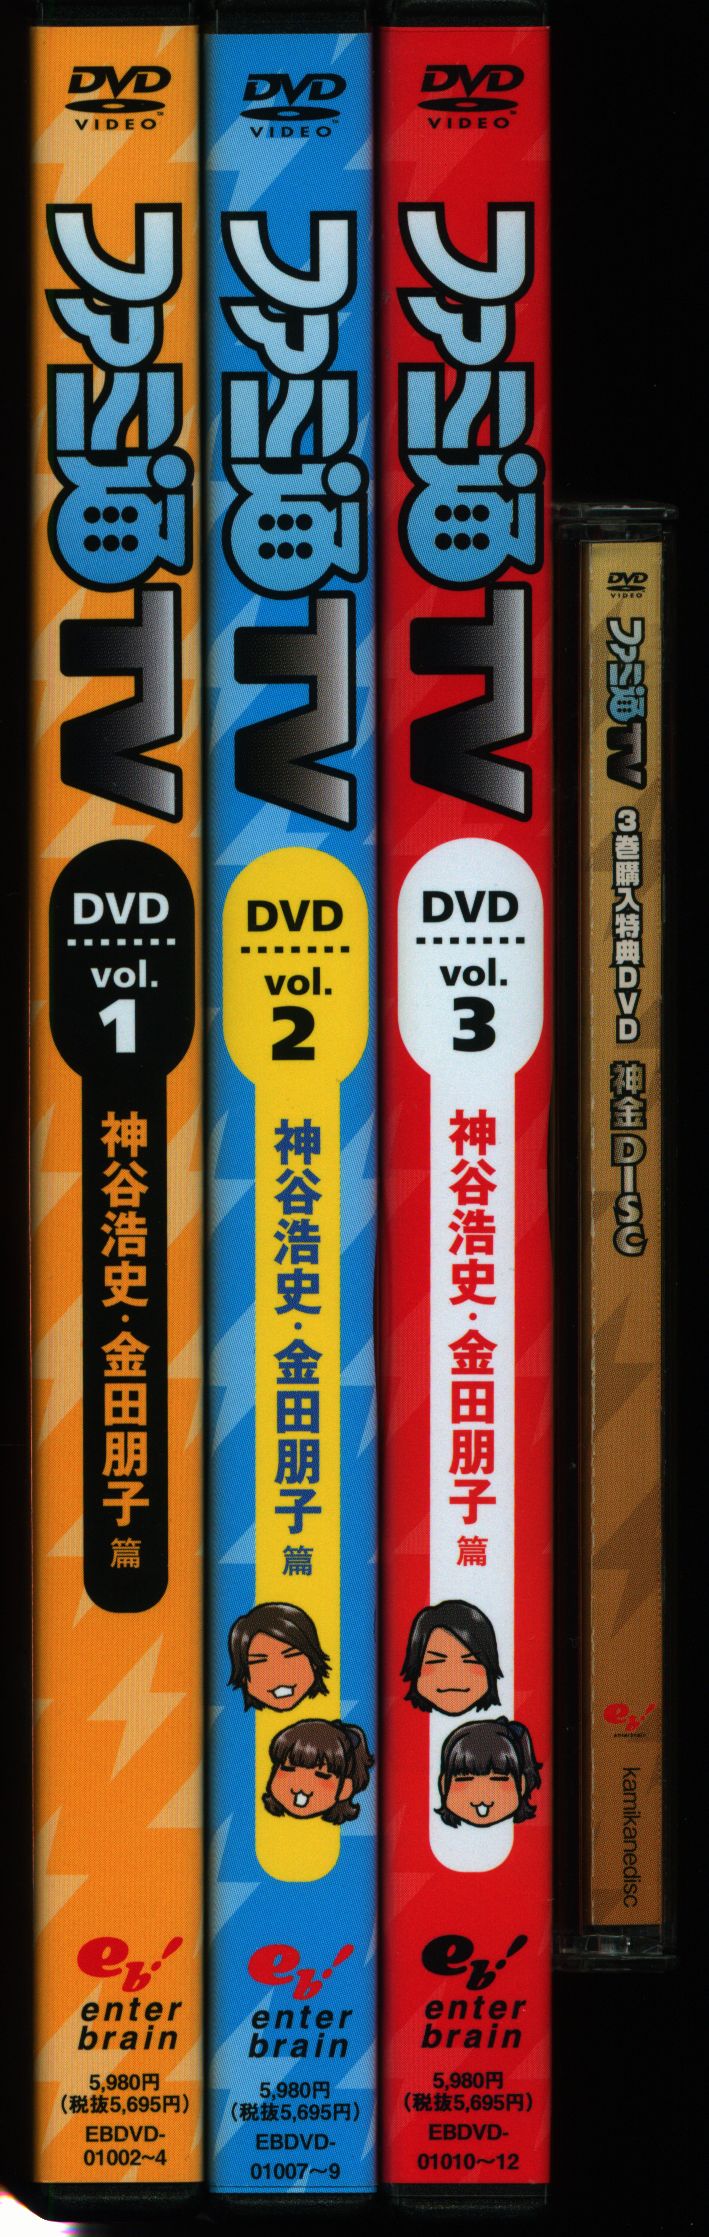 総合福袋 ファミ通TV 3巻購入特典DVD神金DISC付 お笑い/バラエティ